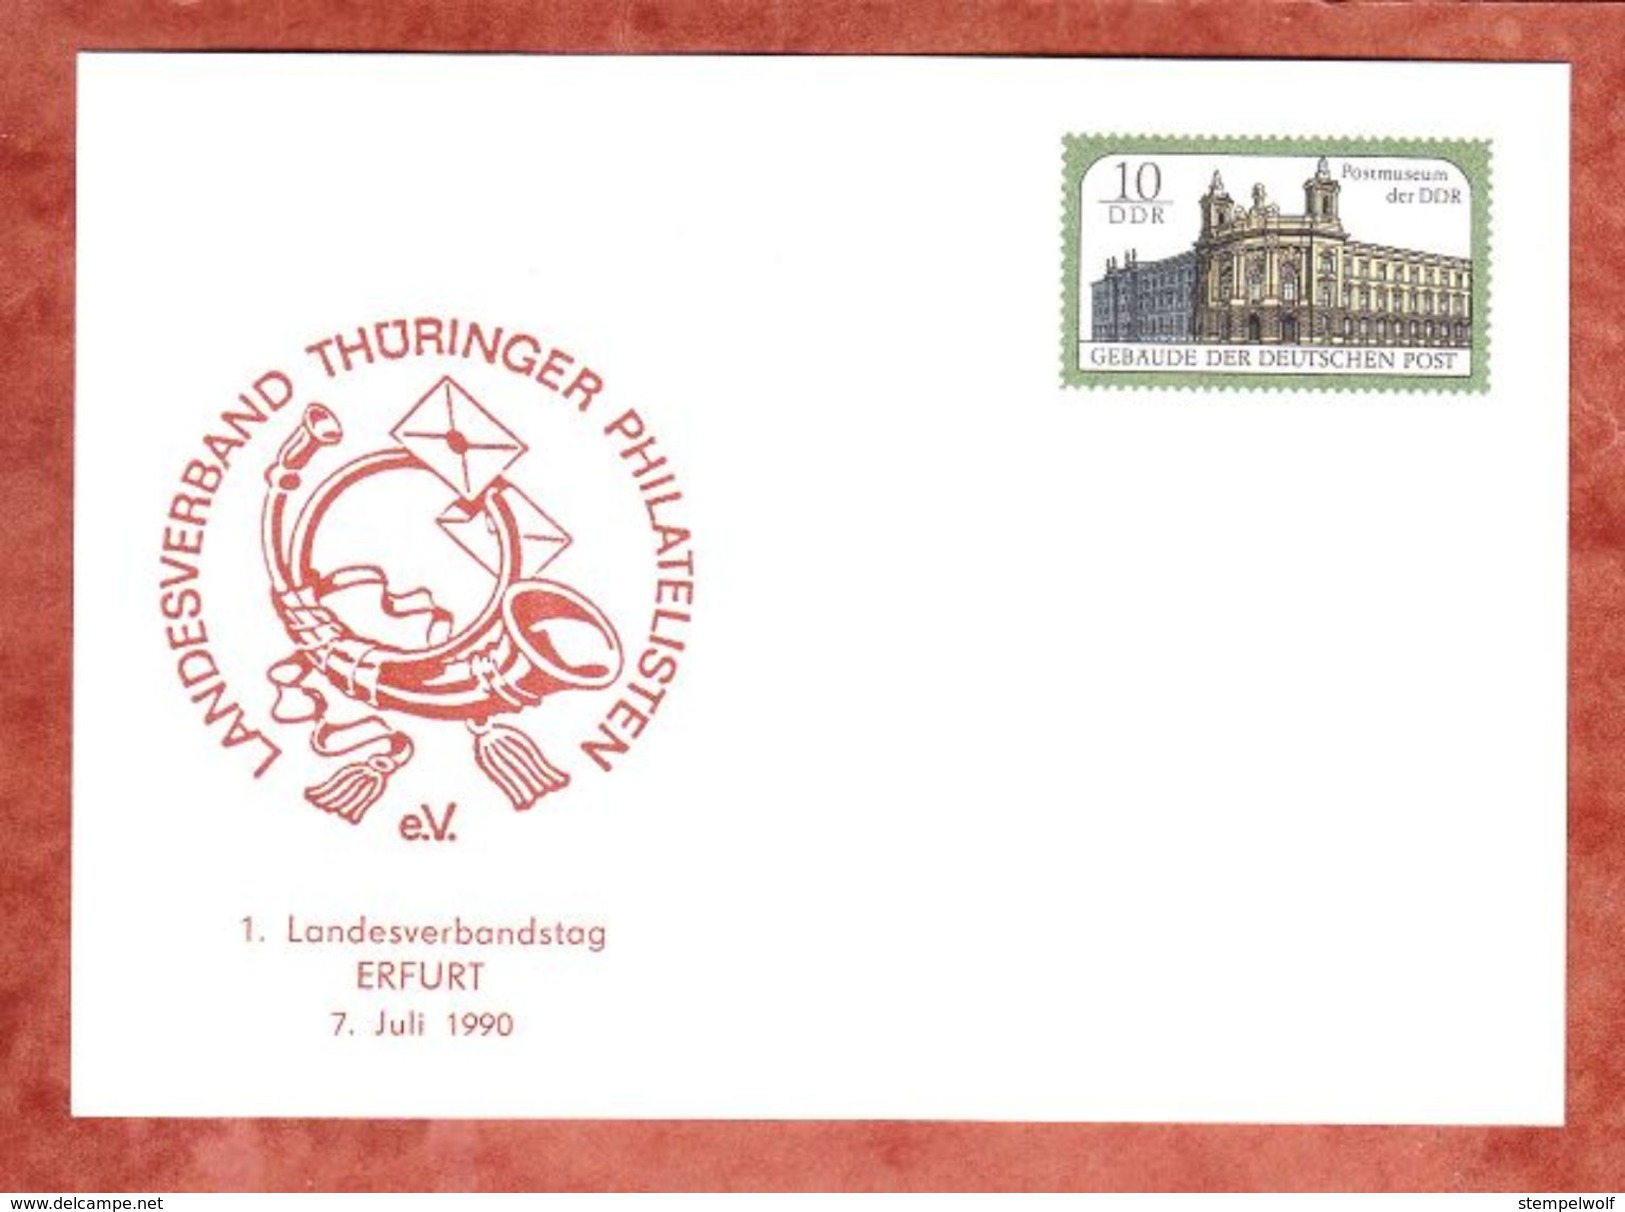 PP, Postmuseum Der DDR, Landesverbandstag Erfurt, Ungebraucht, 1990 (38955) - Privatpostkarten - Ungebraucht